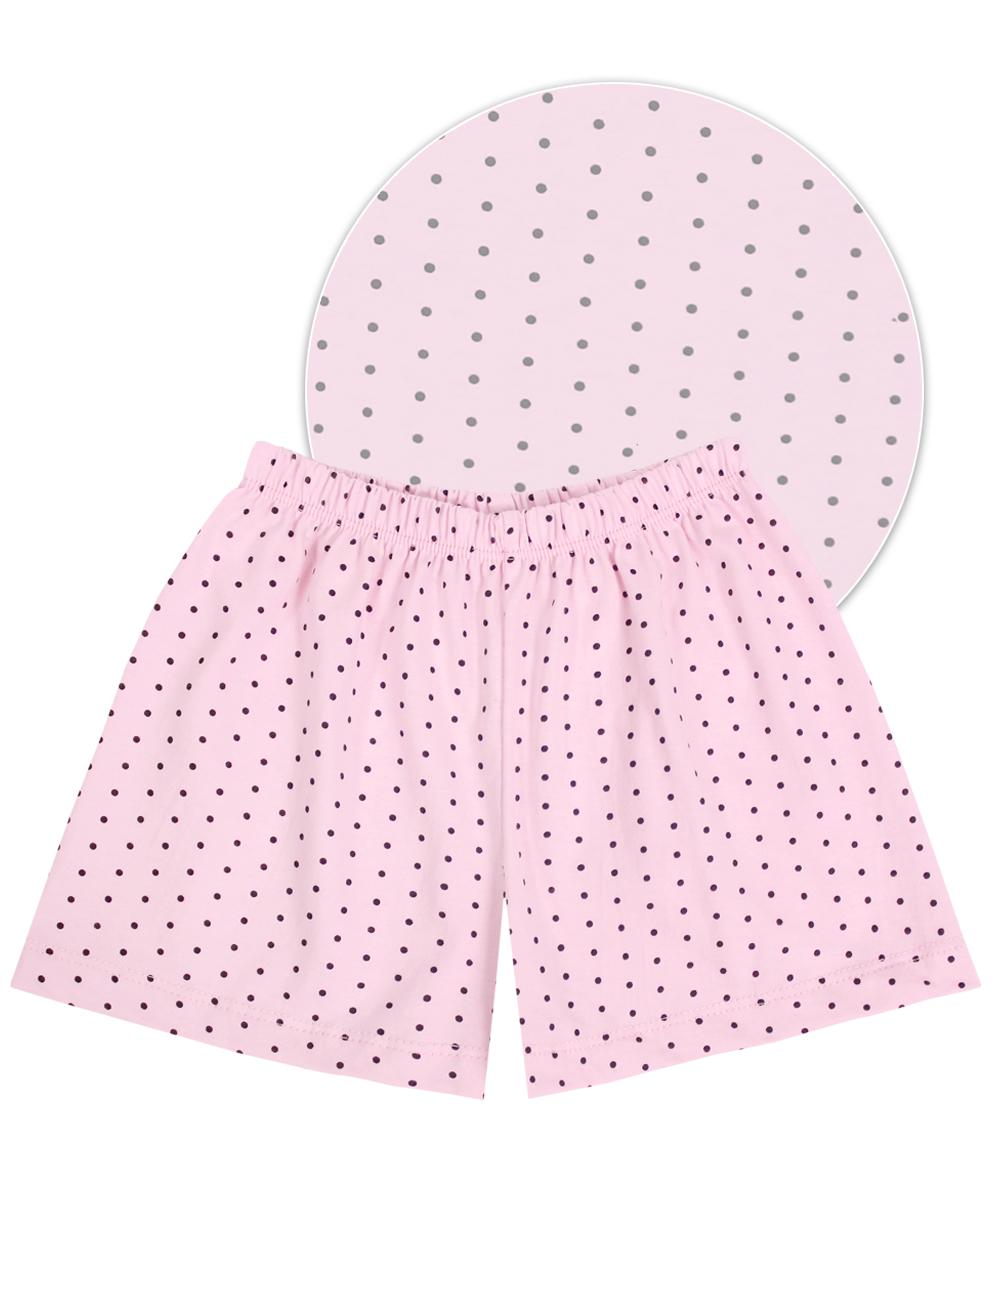 Пижама детская KETMIN СОВУШКА цв.Розовый/Чёрная точка (Футболка/Шорты)